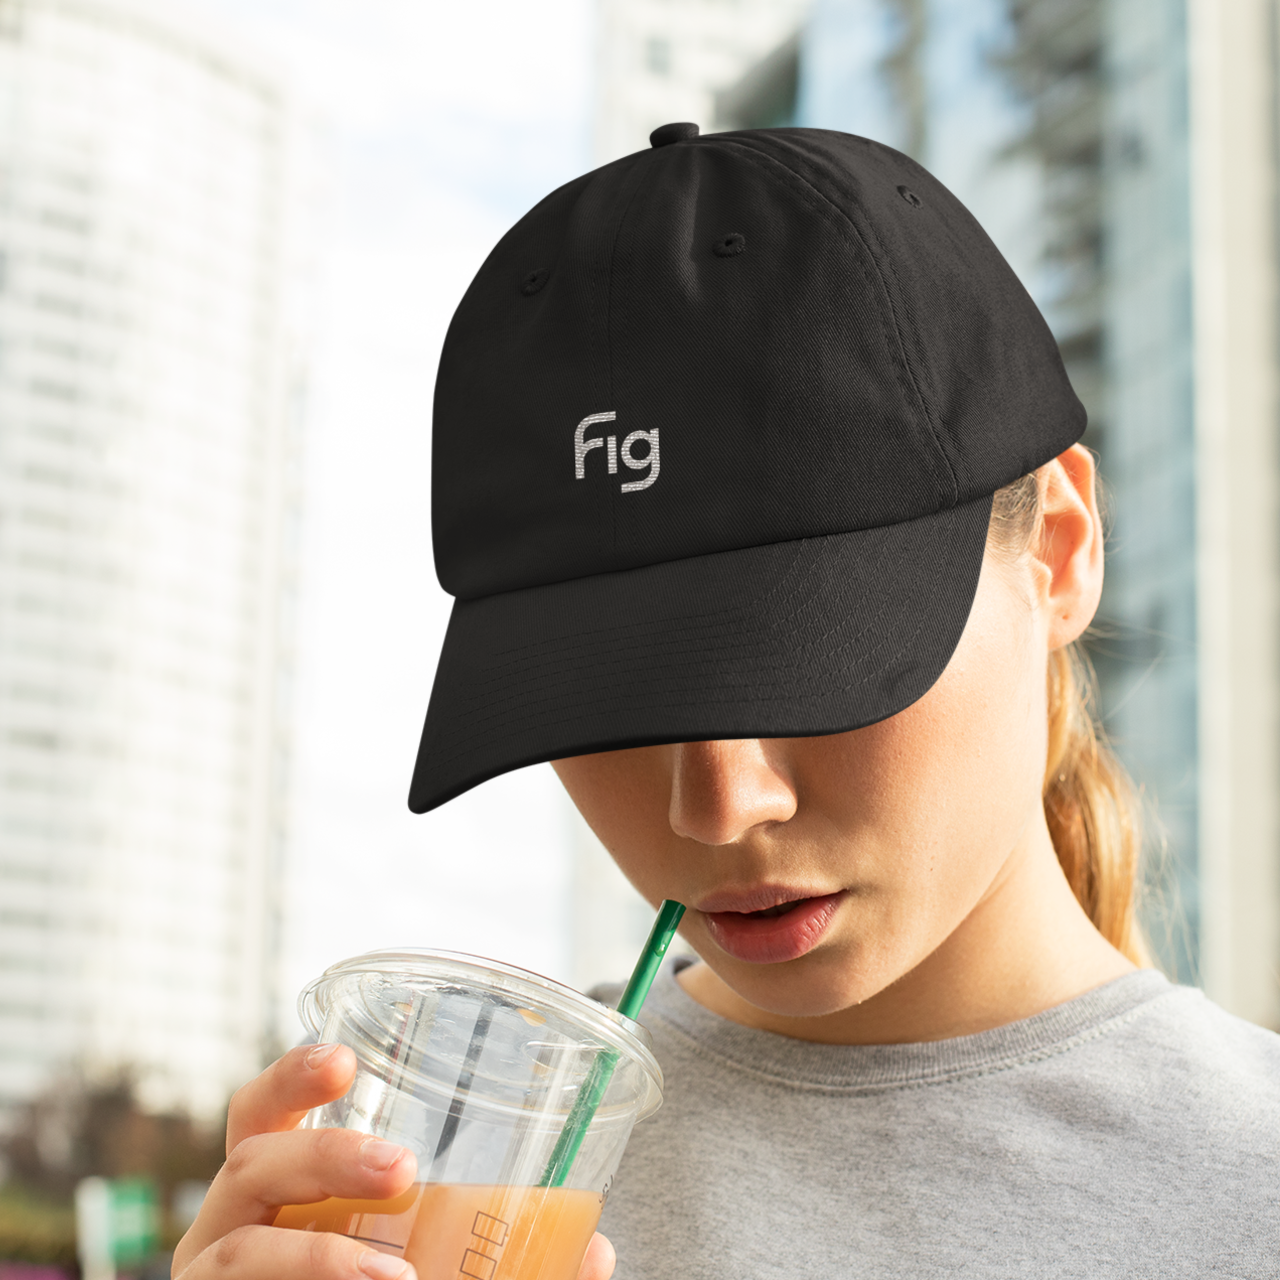 Fig-Branded